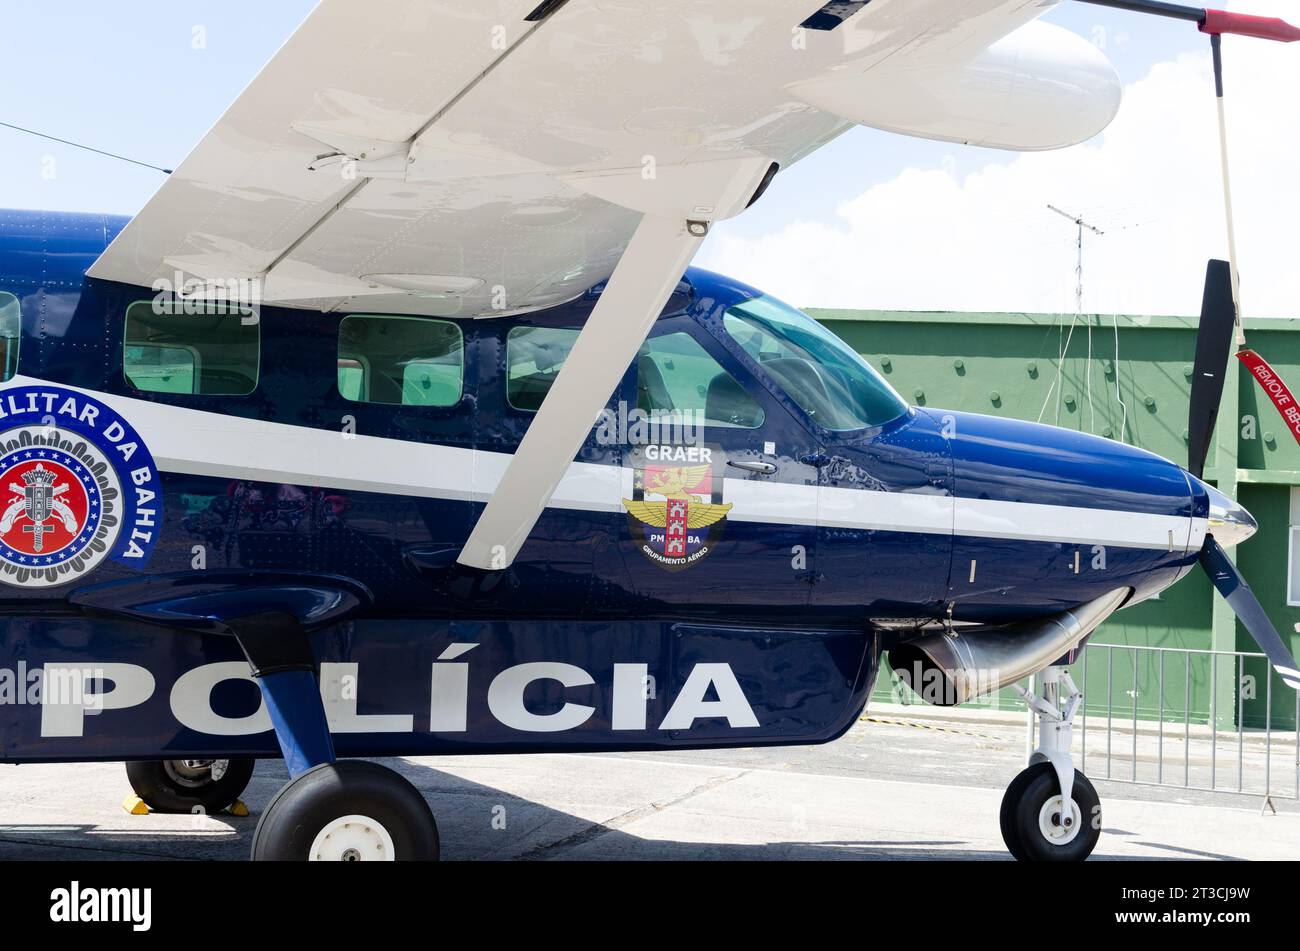 Salvador, Bahia, Brasile - 11 novembre 2014: L'aereo livellatore PR-IPM della polizia militare di Bahia si è fermato alla base militare dell'aeronautica militare brasiliana nella città di Foto Stock